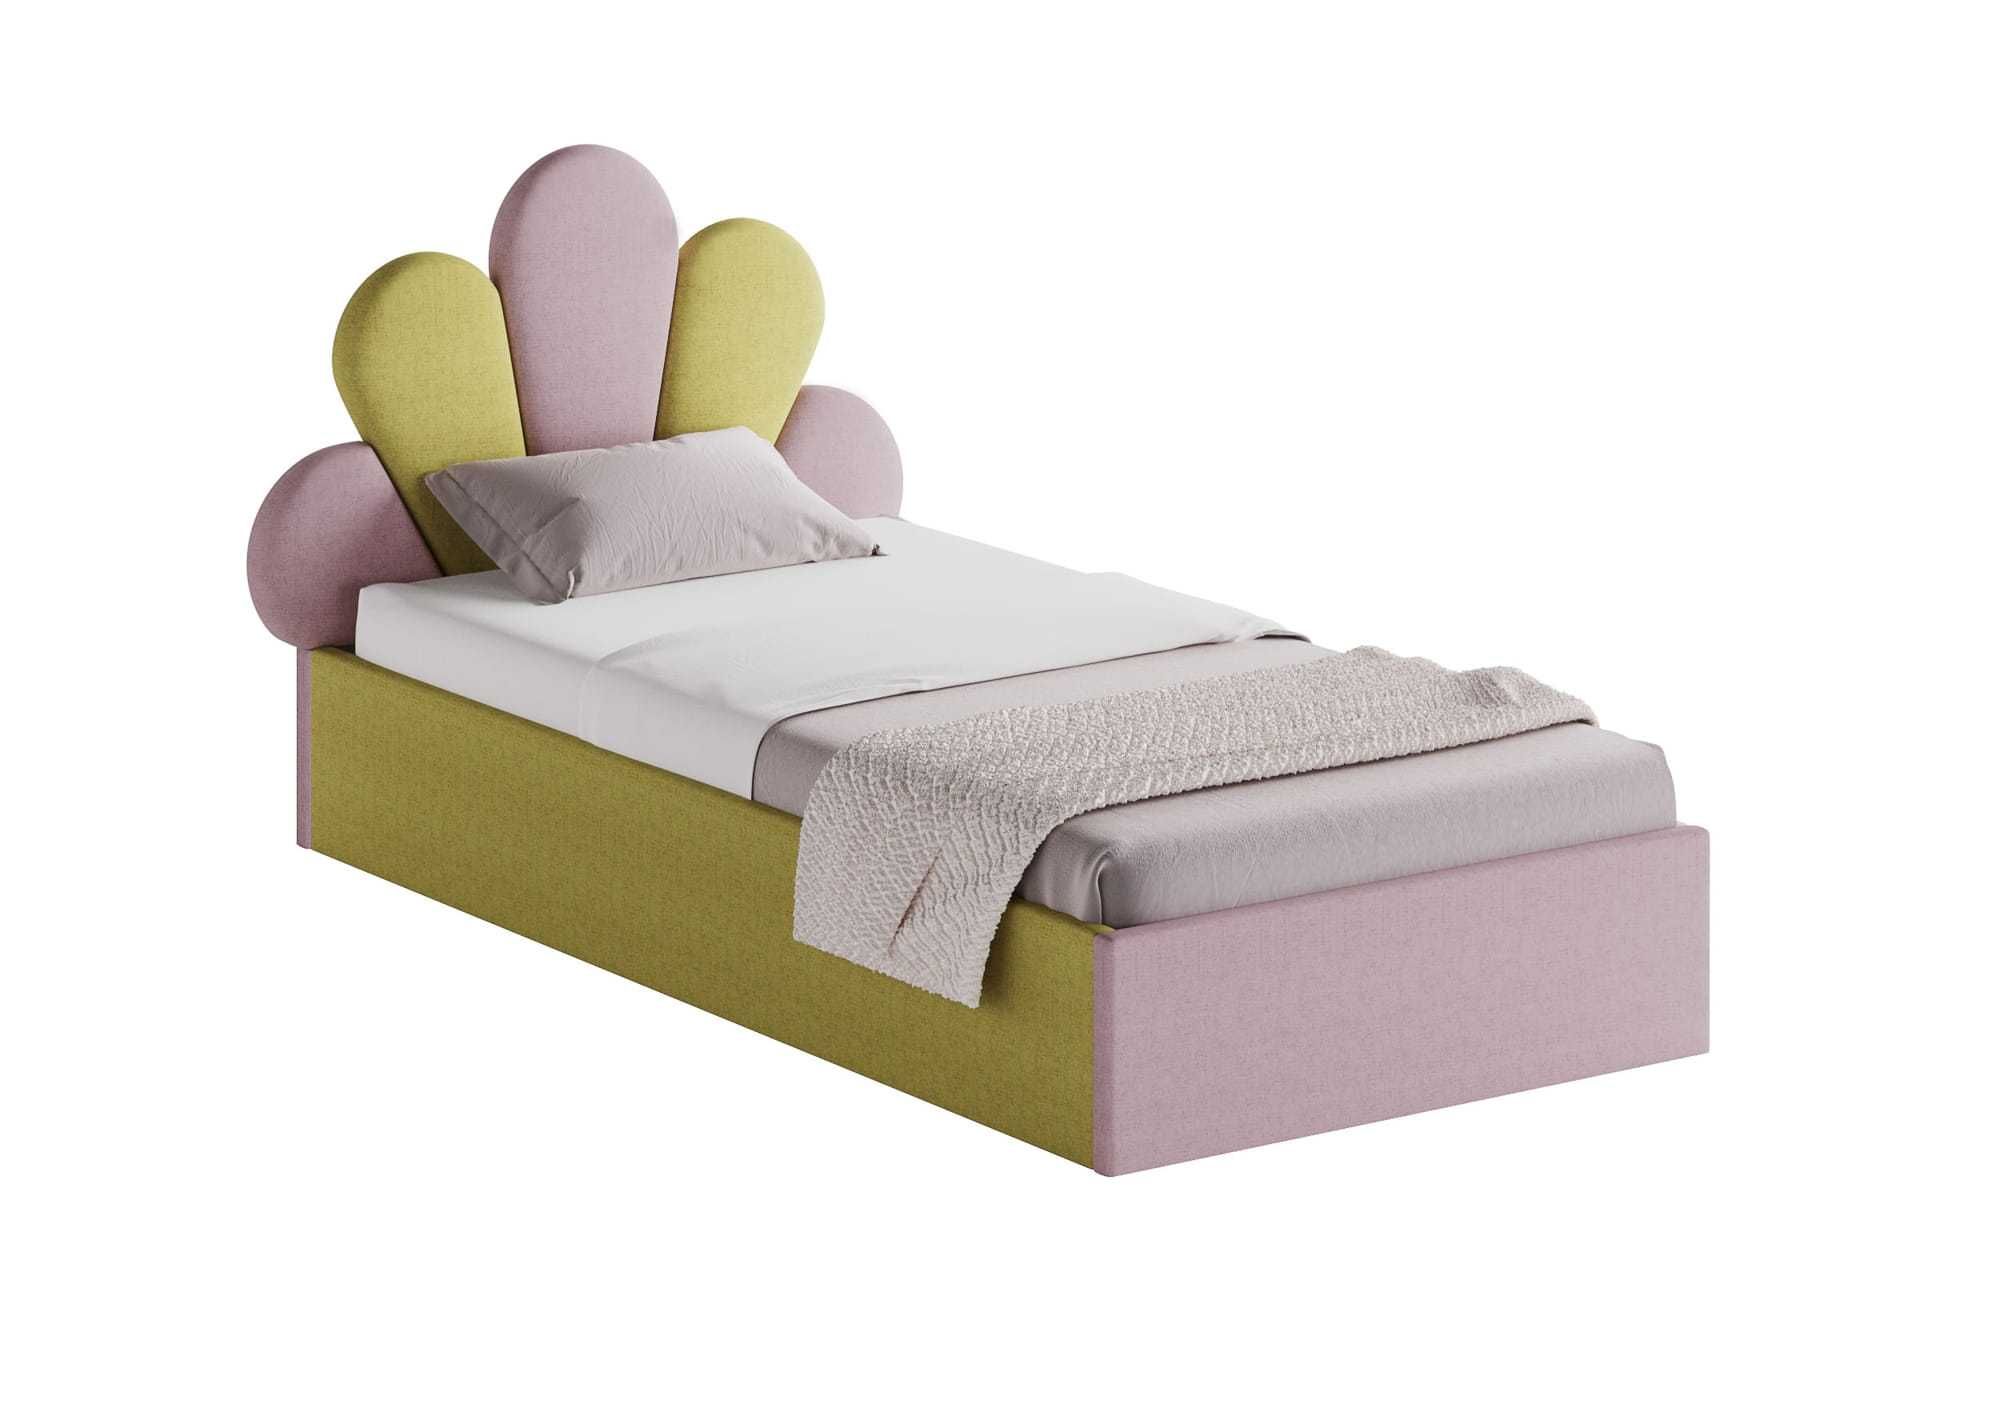 Vand pat colorat pentru copii cu saltea inclusa